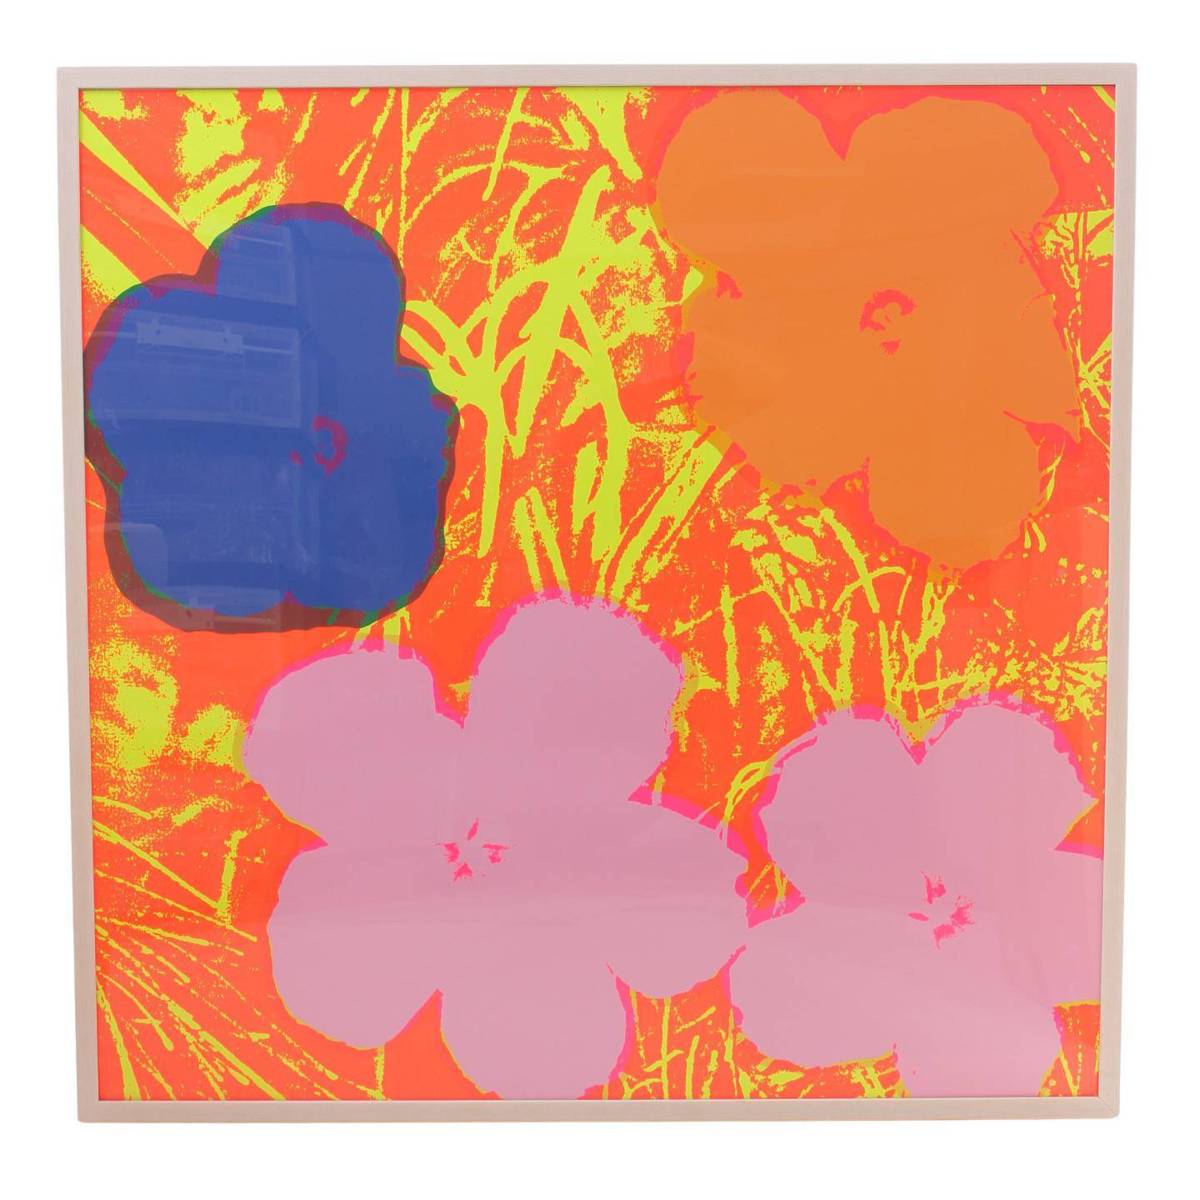 その他() アンディ・ウォーホル『Flowers』♯11.69 絵画 アンディ・ウォーホルの代表作